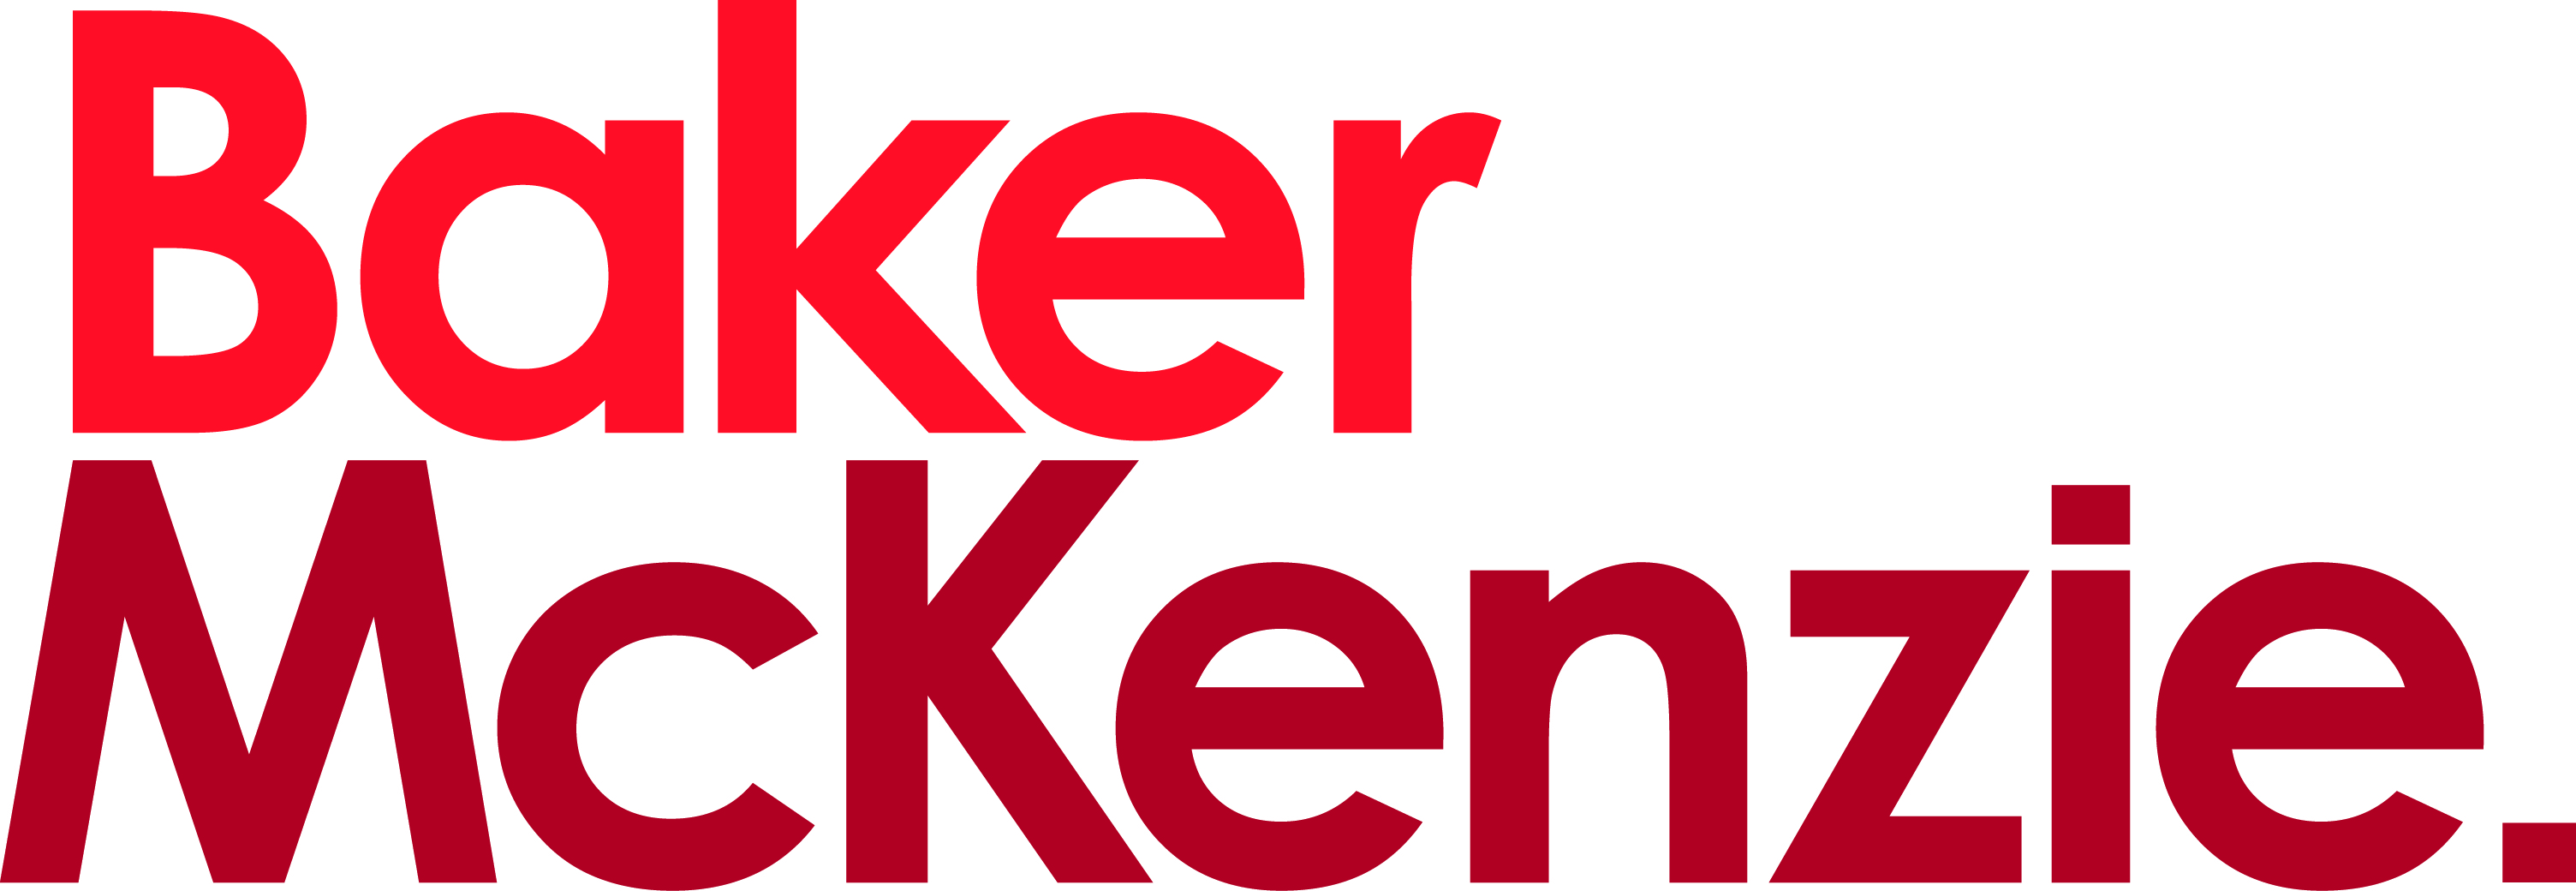 Baker McKenzie Logo CMYK